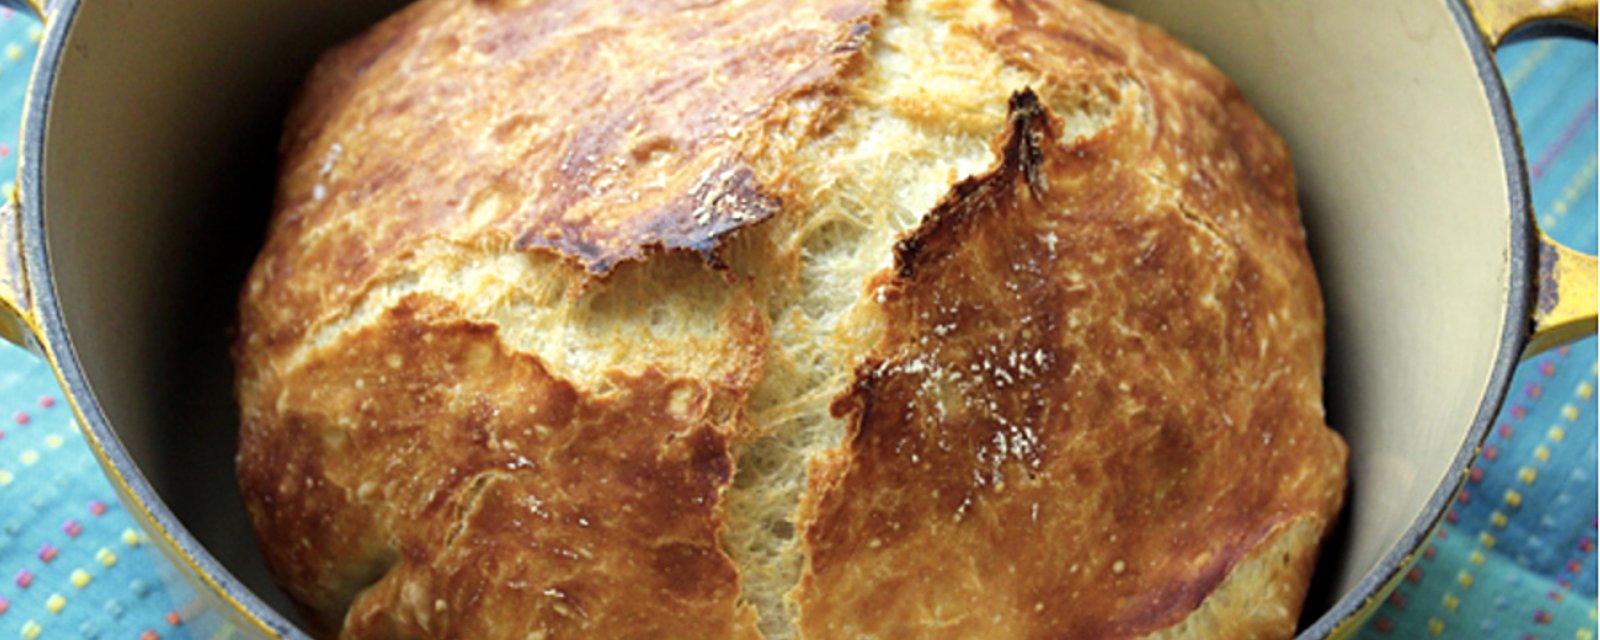 Ce pain infaillible est parfait pour les boulangers débutants... Impossible à rater!